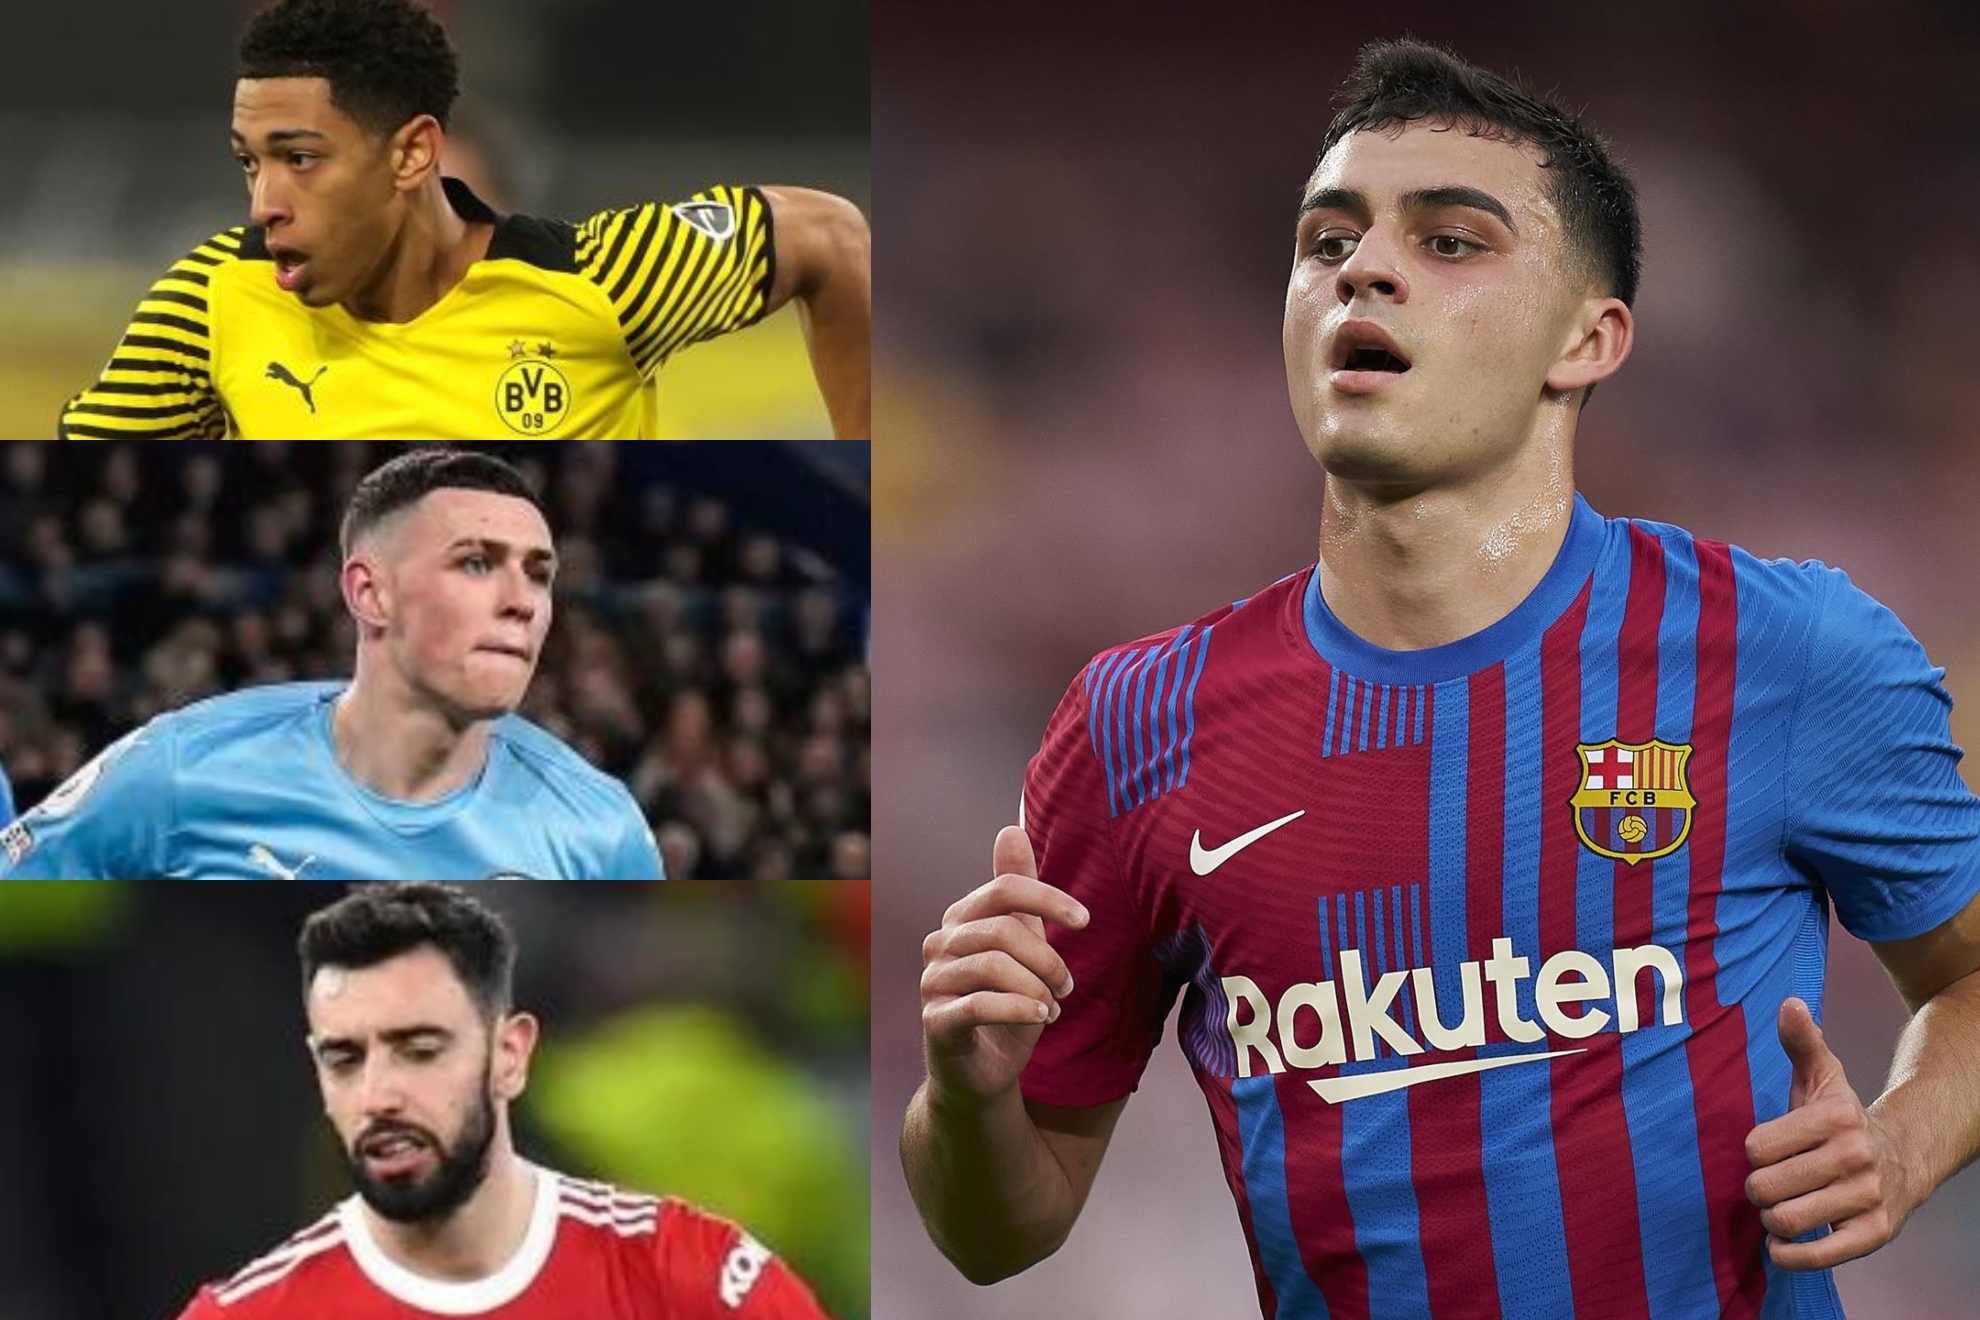 Estos son los 20 centrocampistas con mayor valor de mercado. Hay cinco jugadores de LaLiga Santander y tres internacionales por España.